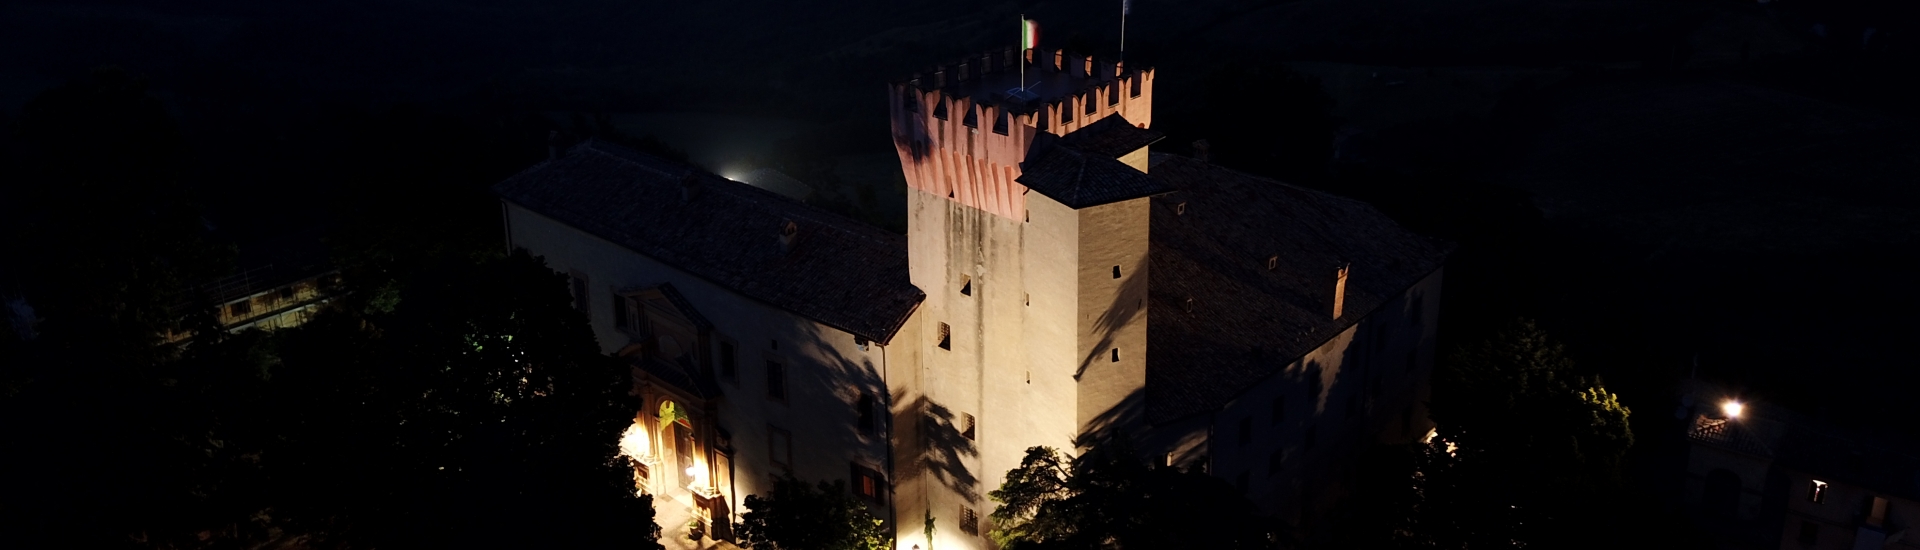 Castello di Guiglia - Castello di Guiglia con Panorama foto di: |Mauroriccio| - https://it.wikipedia.org/wiki/Guiglia#/media/File:Castello_di_Guigli_con_panorama.jpg